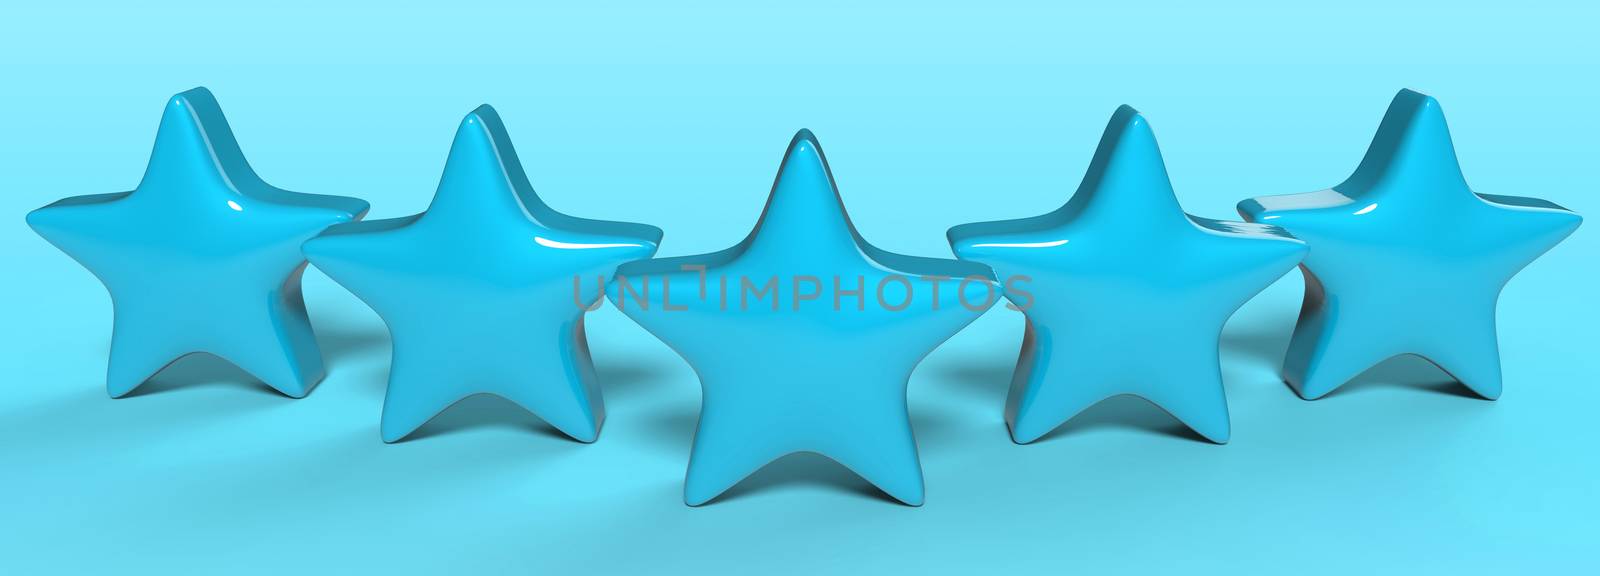 3d five azure star on color background. Render and illustration of golden star for premium